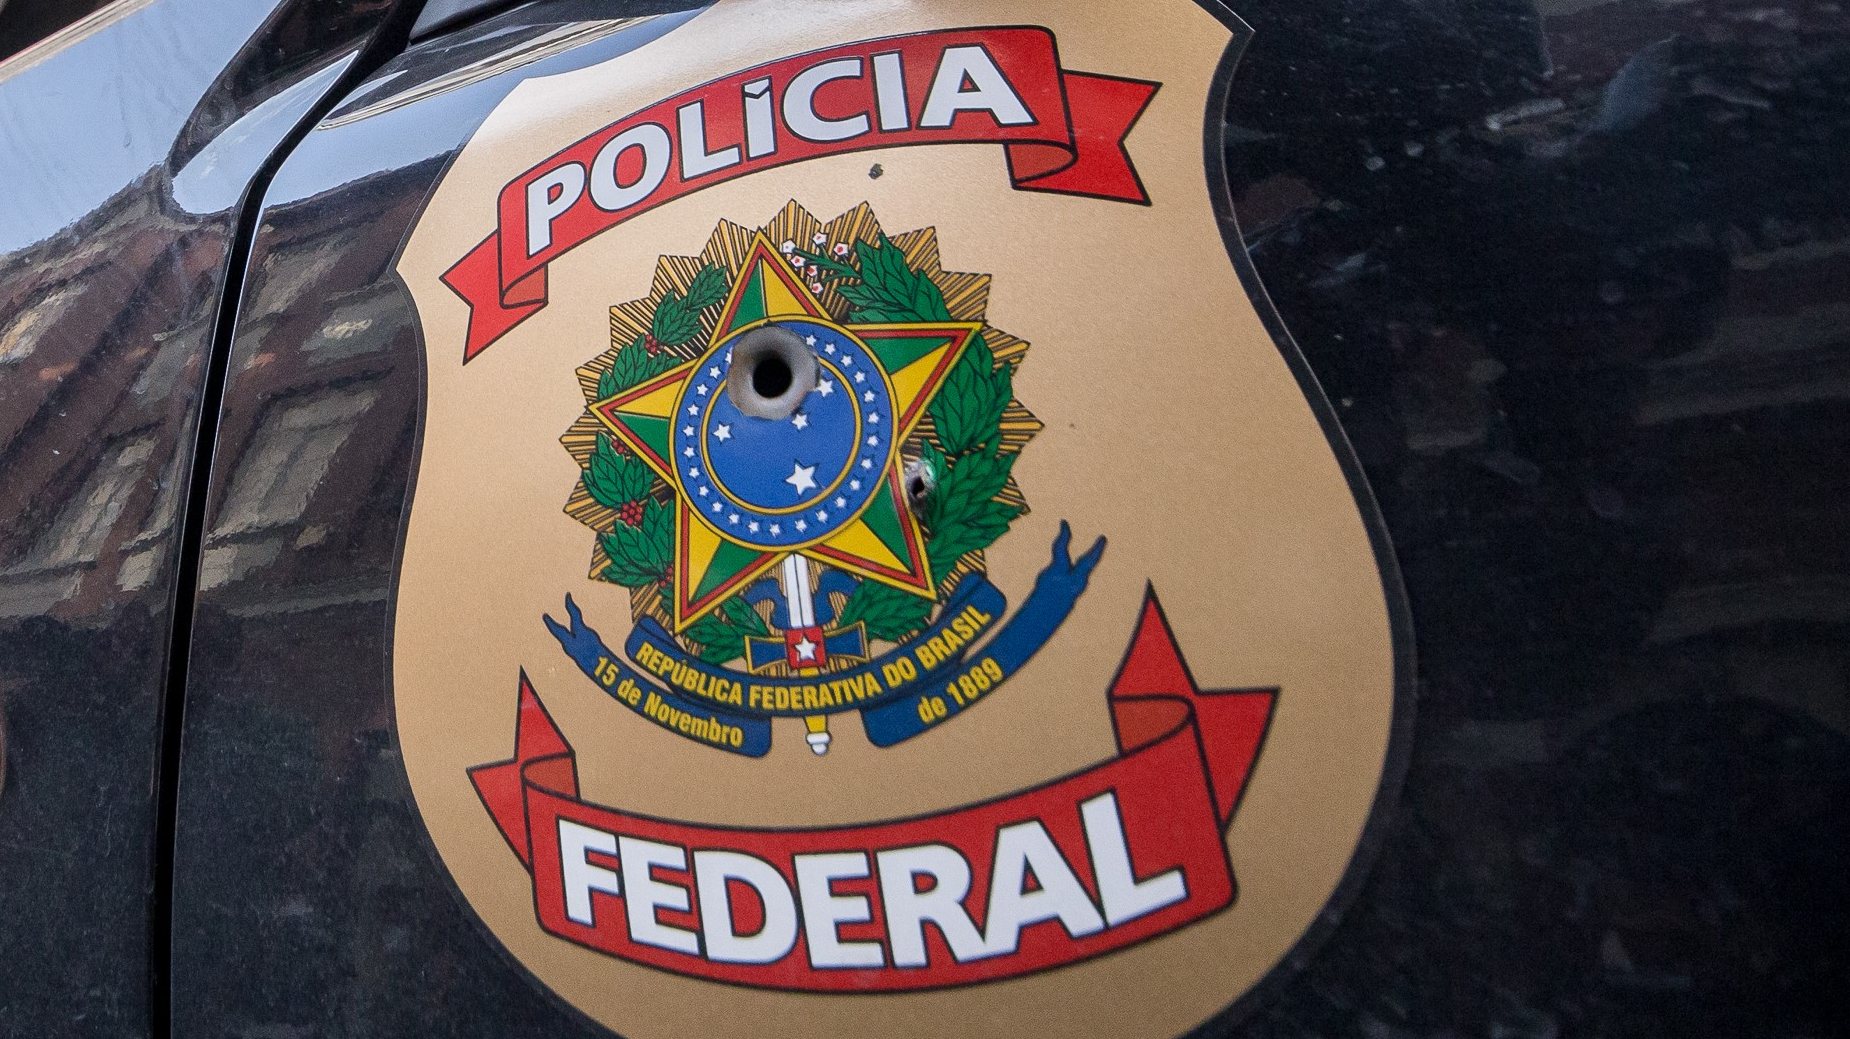 Carro da Polícia Federal Brasileira - São Paulo